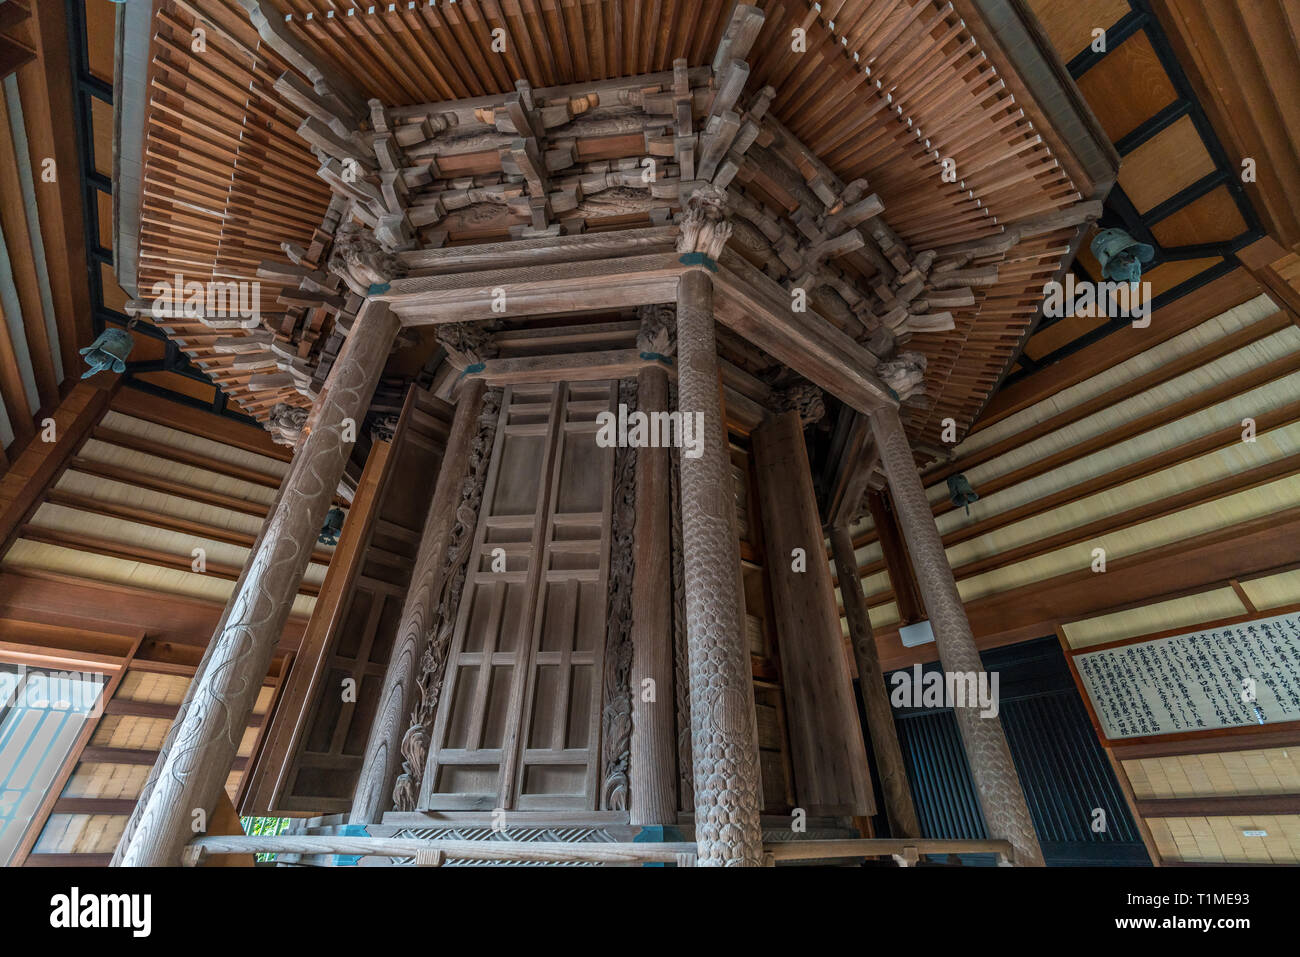 Hase-dera Tempel, kyozo Sutra Archiv, Rinzo Hall (輪蔵). Für rotierende bookracks (Rinzo), mit wichtigen buddhistischen Sutras für den Tempel. Stockfoto